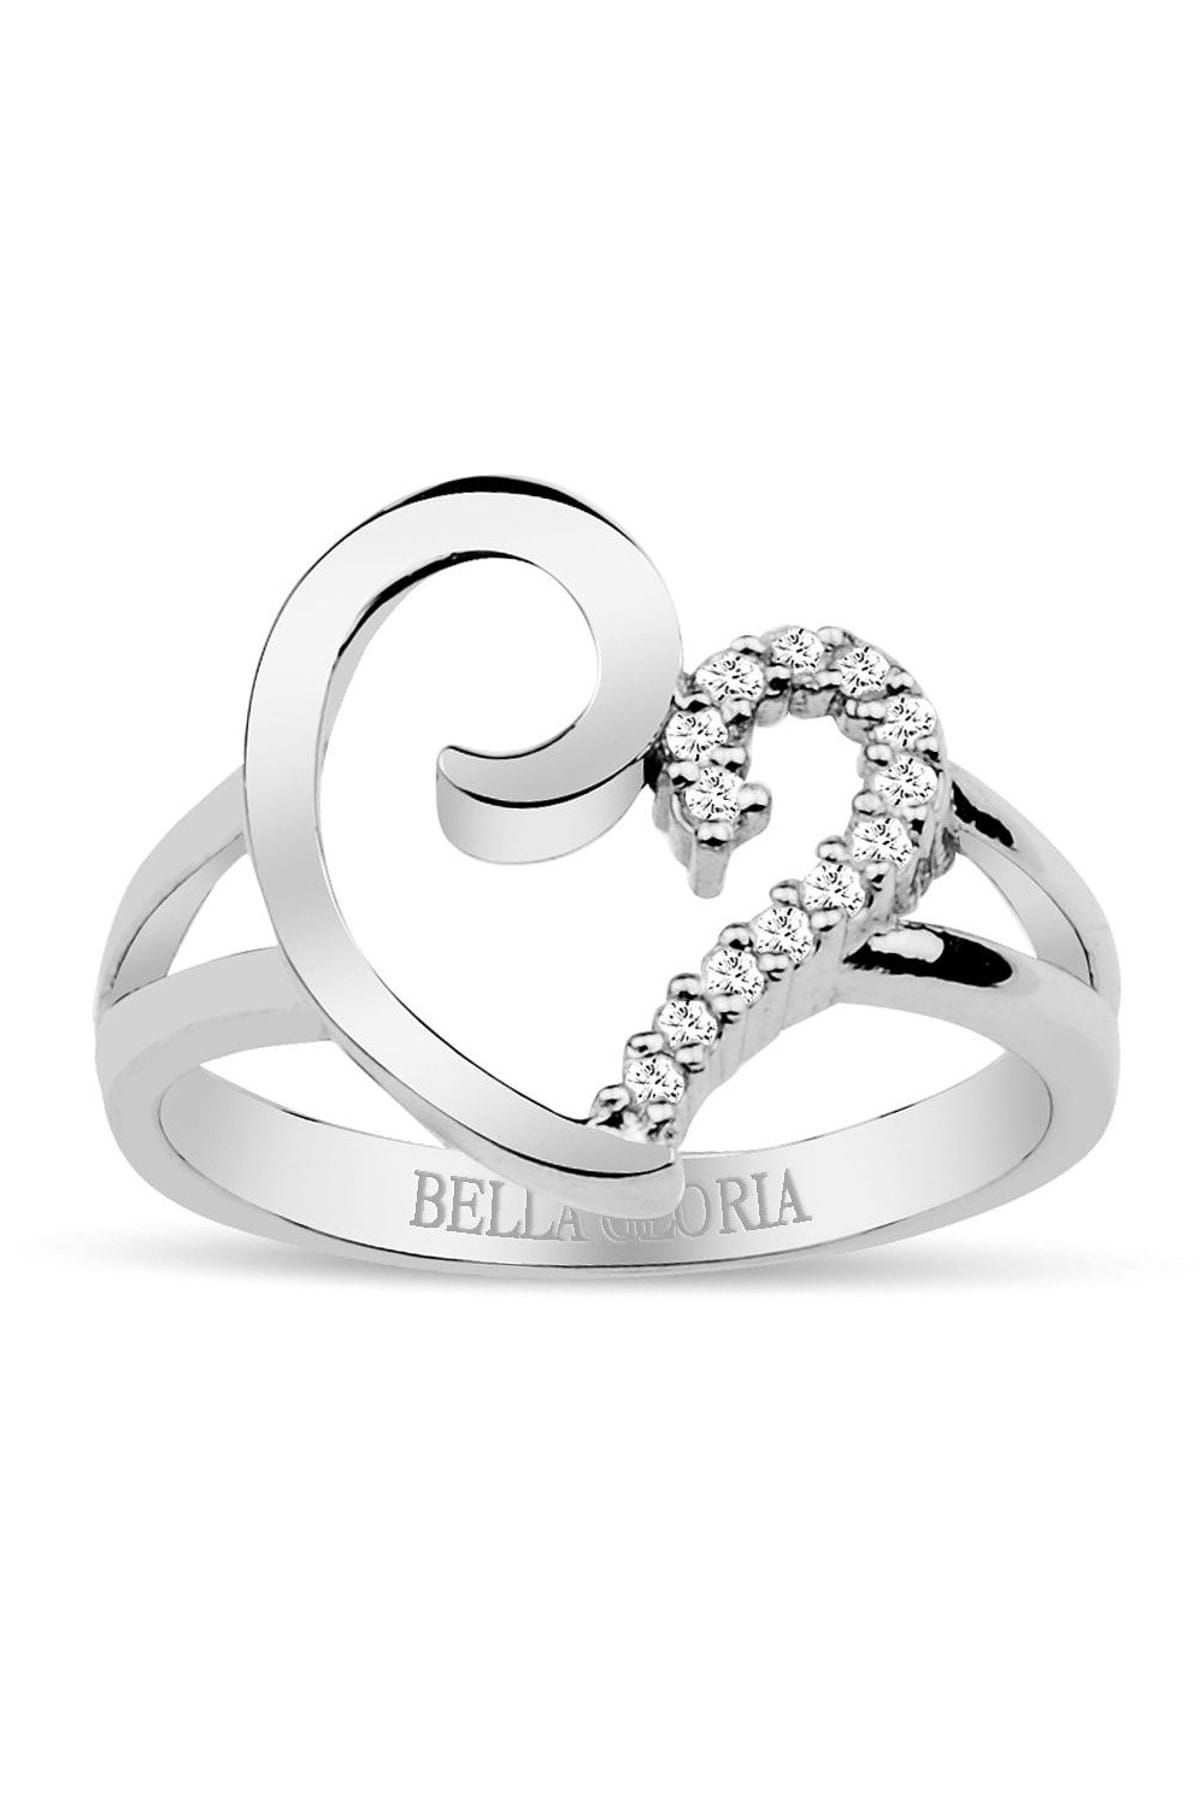 Bella Gloria Altın Kaplamalı Pırlanta Kalp Yüzük (GPY0002)